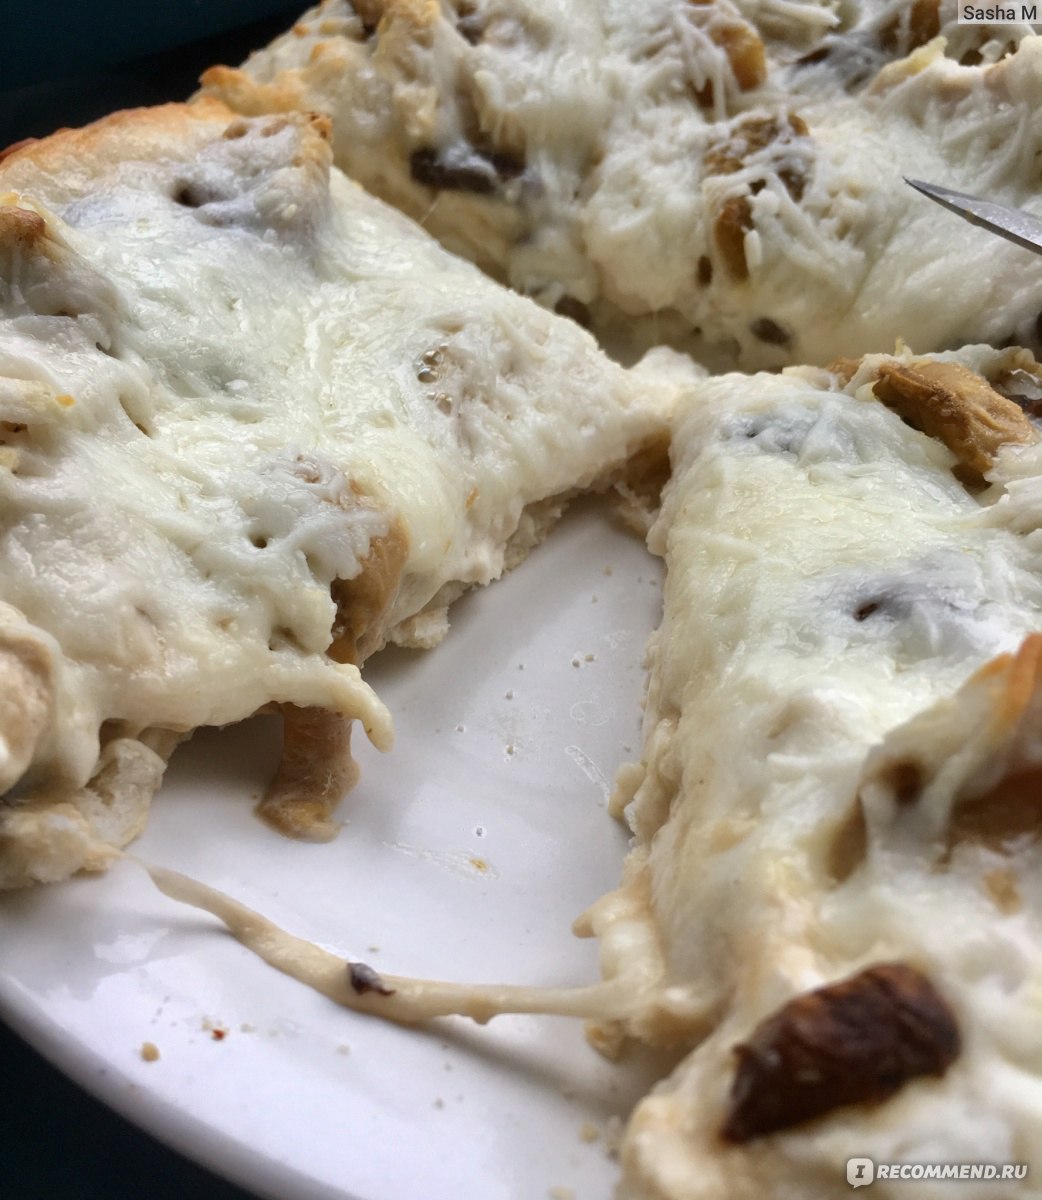 Пицца римская с курицей и белыми грибами, зам. Айс от ВкусВилл Отзывы